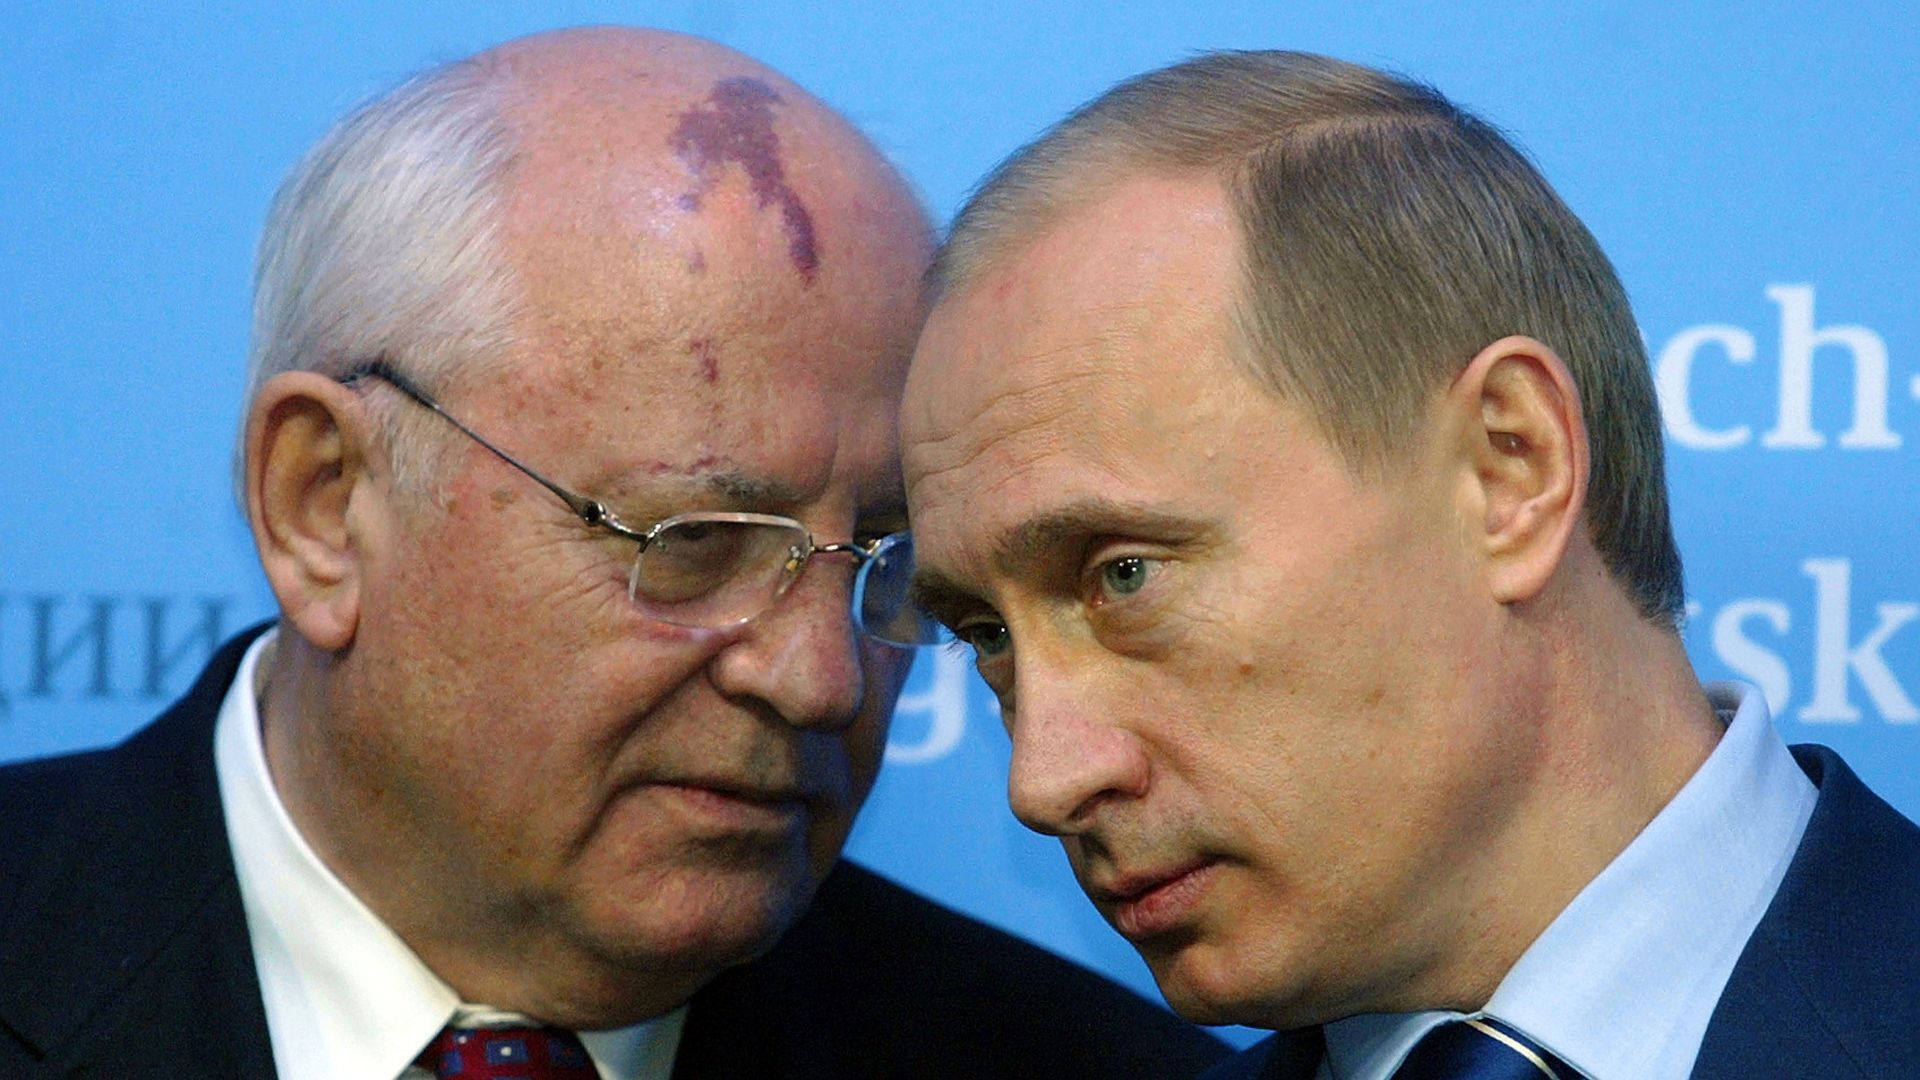 Putin with Gorbachev